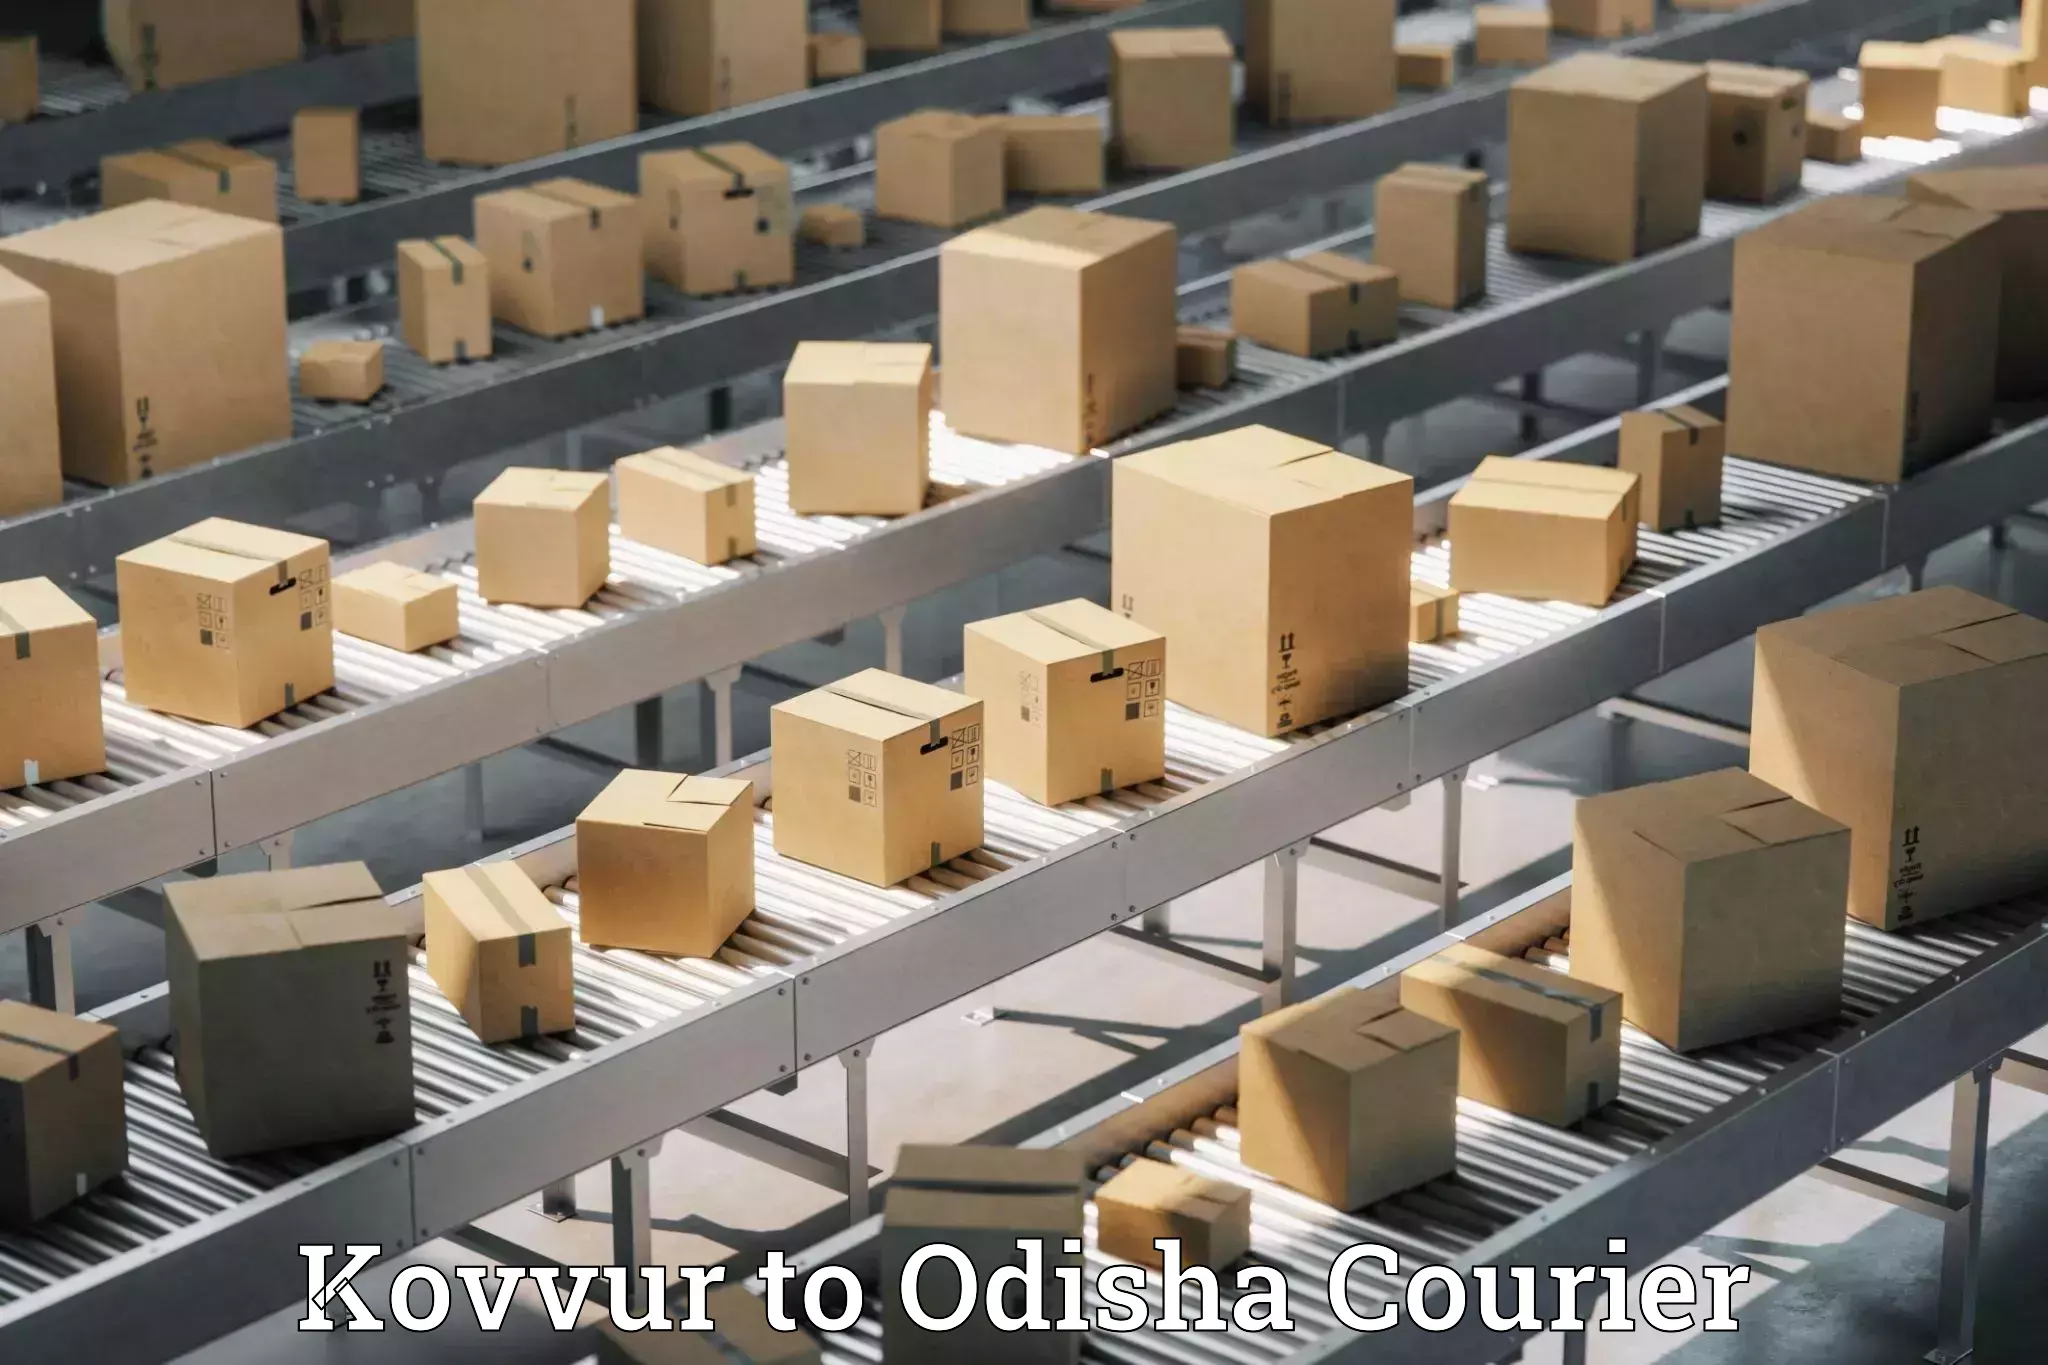 Seamless shipping experience Kovvur to Kesinga